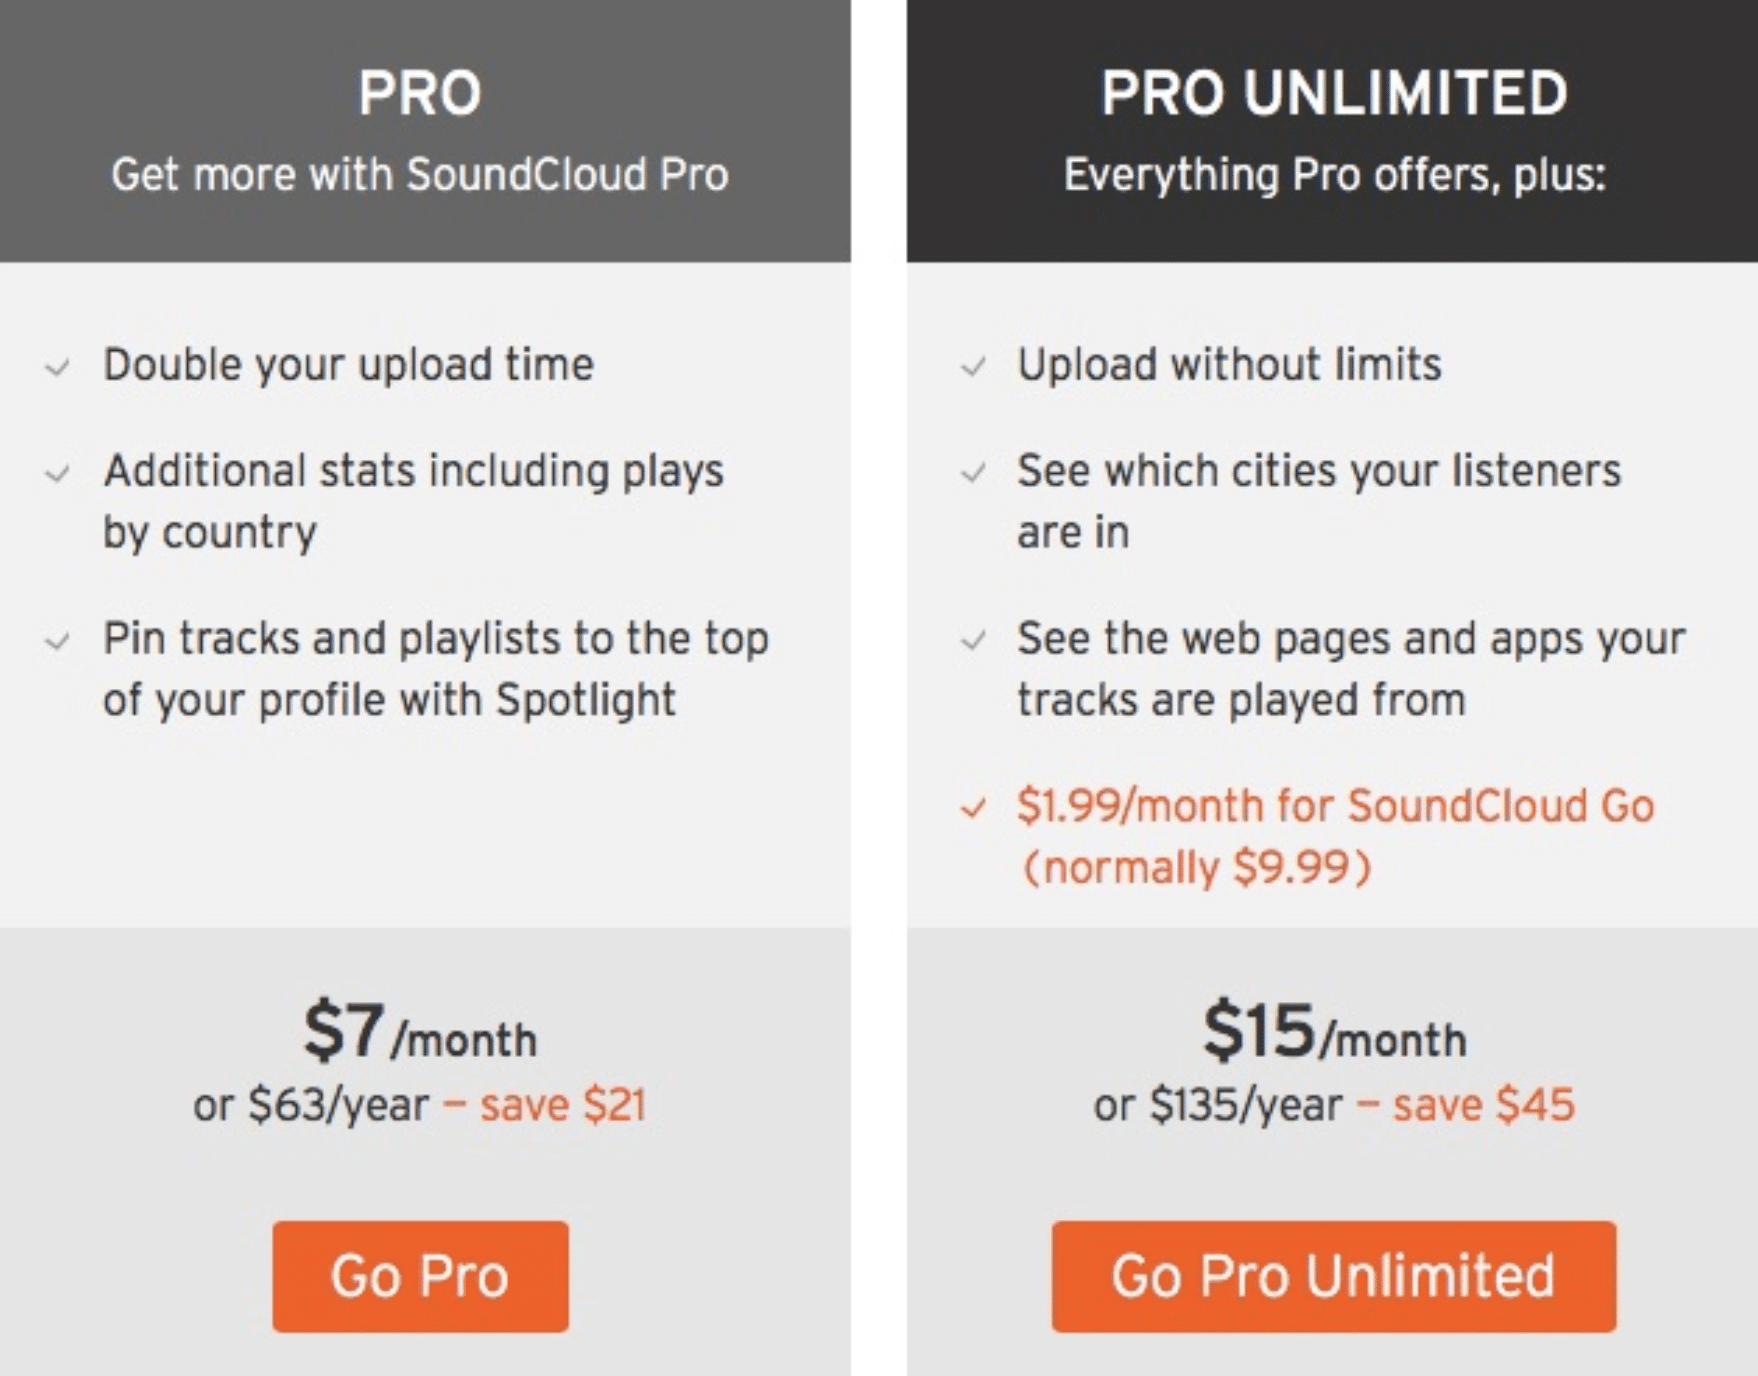 Pro Unlimited - Unison